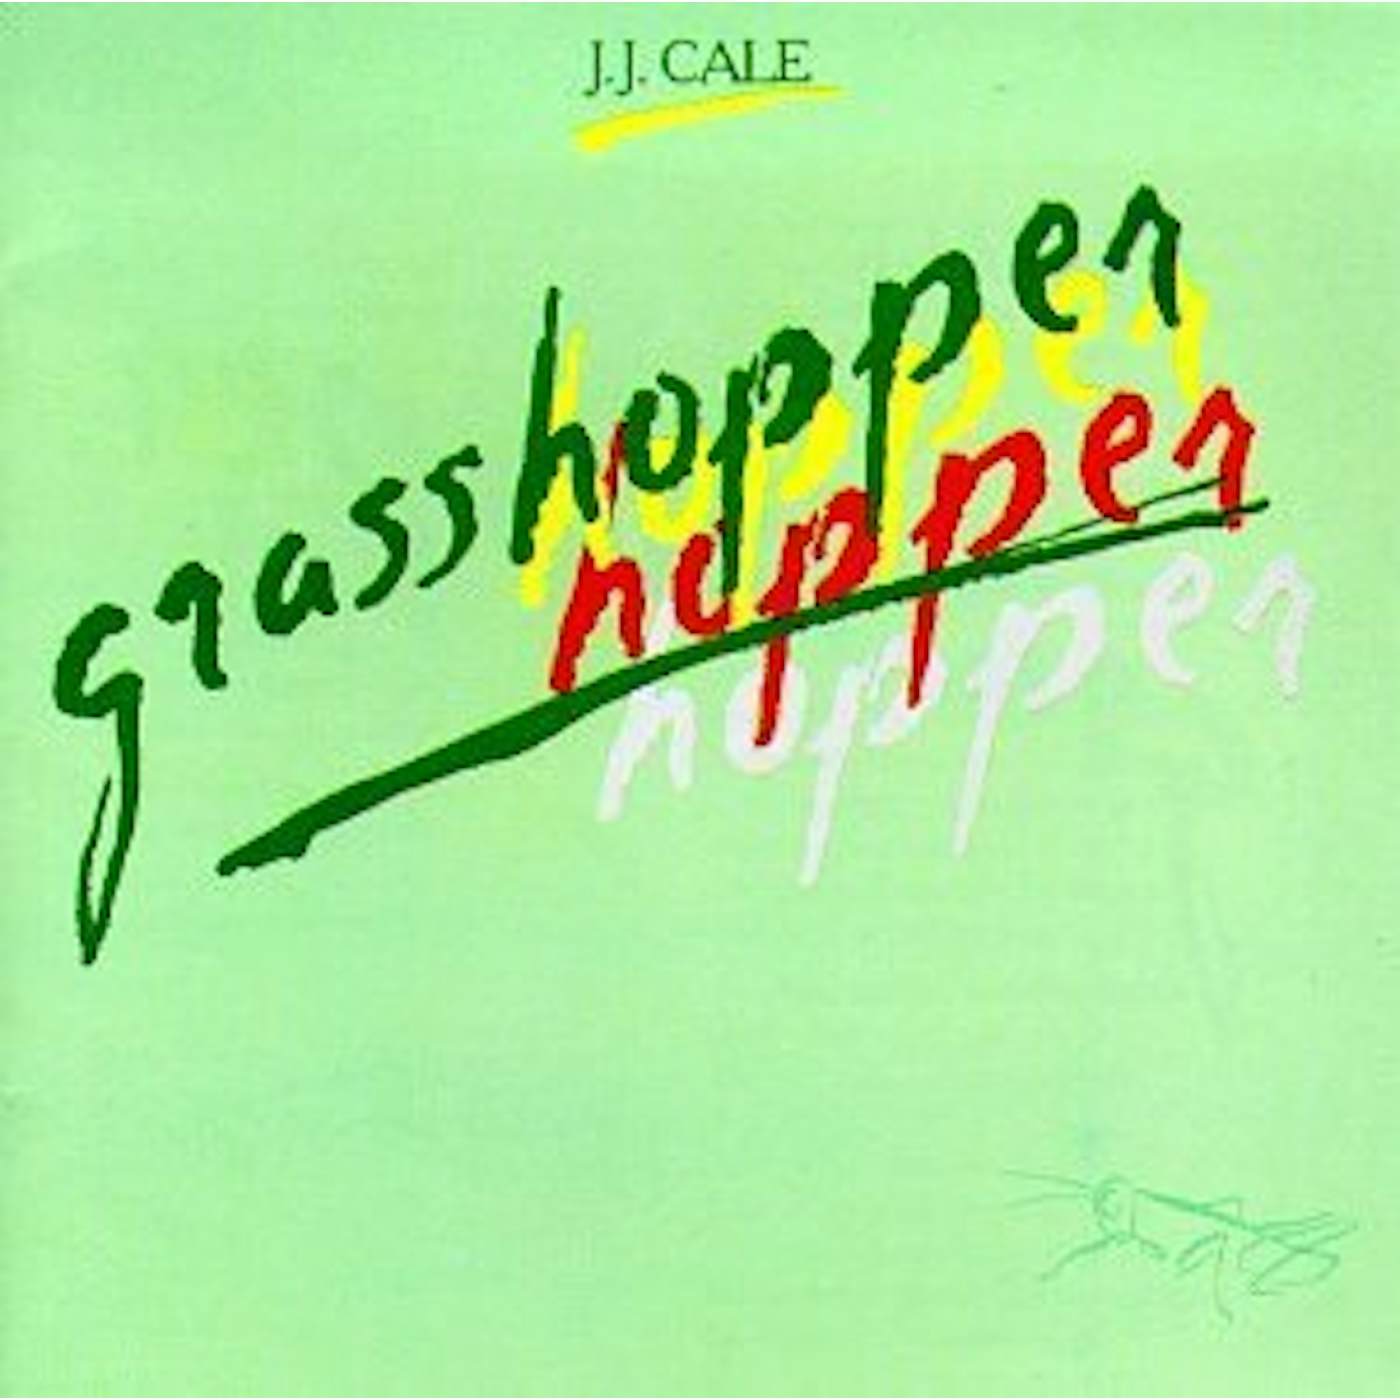 J.J. Cale GRASSHOPPER CD